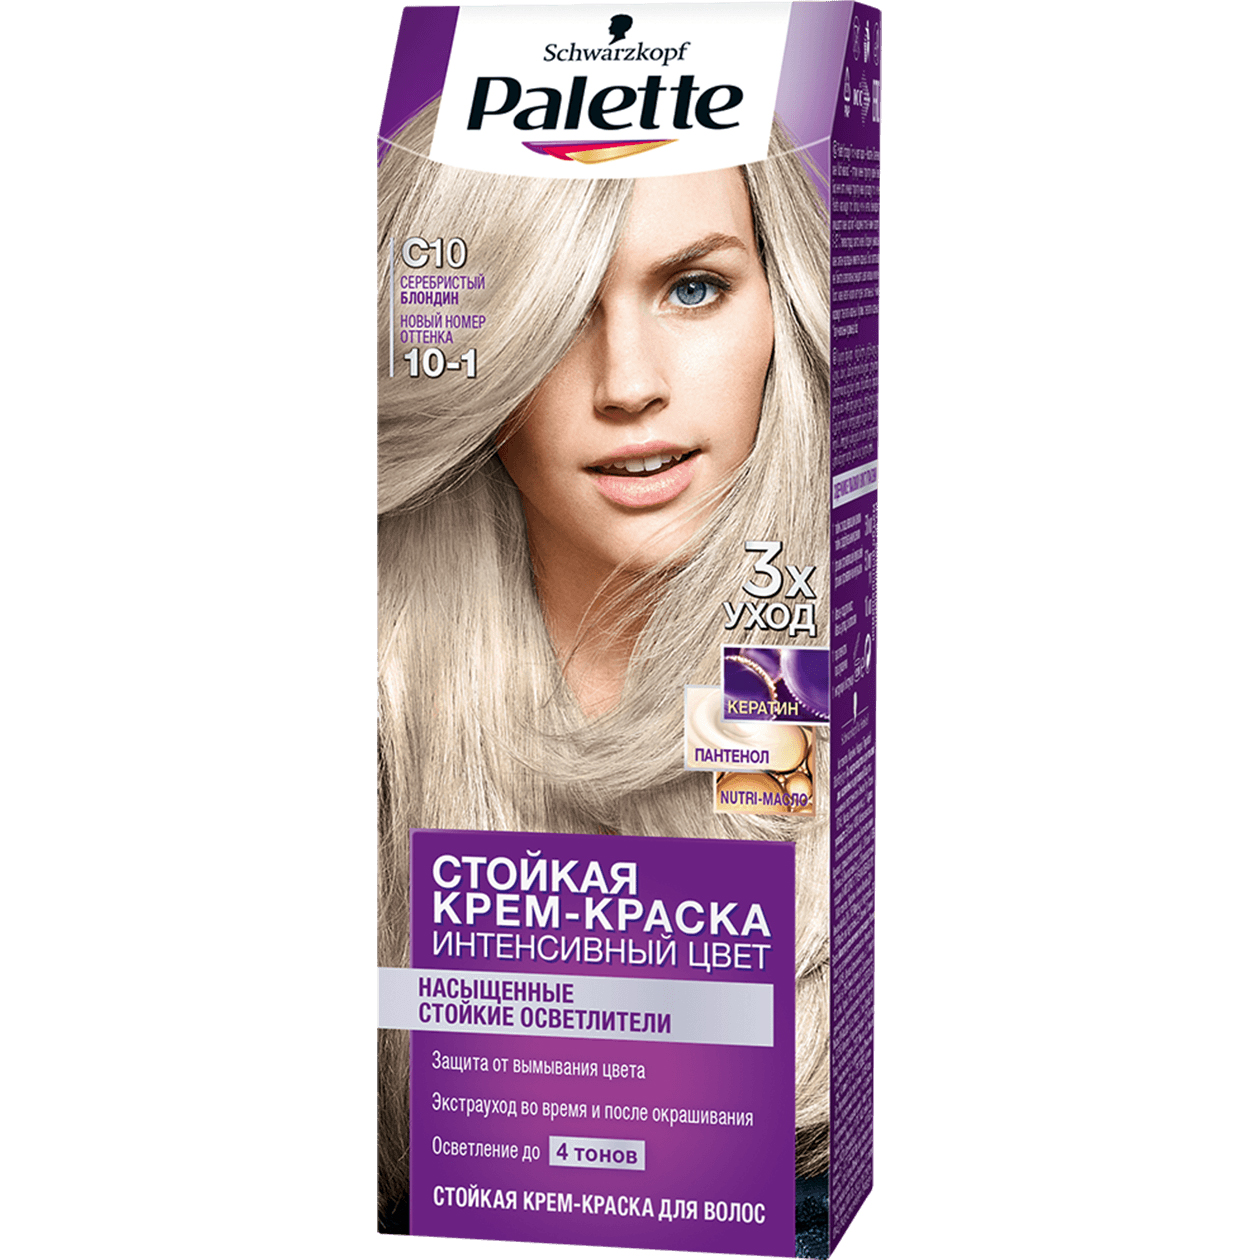 Краска для волос Palet Icc C10 Серебристый Блонд, 50мл